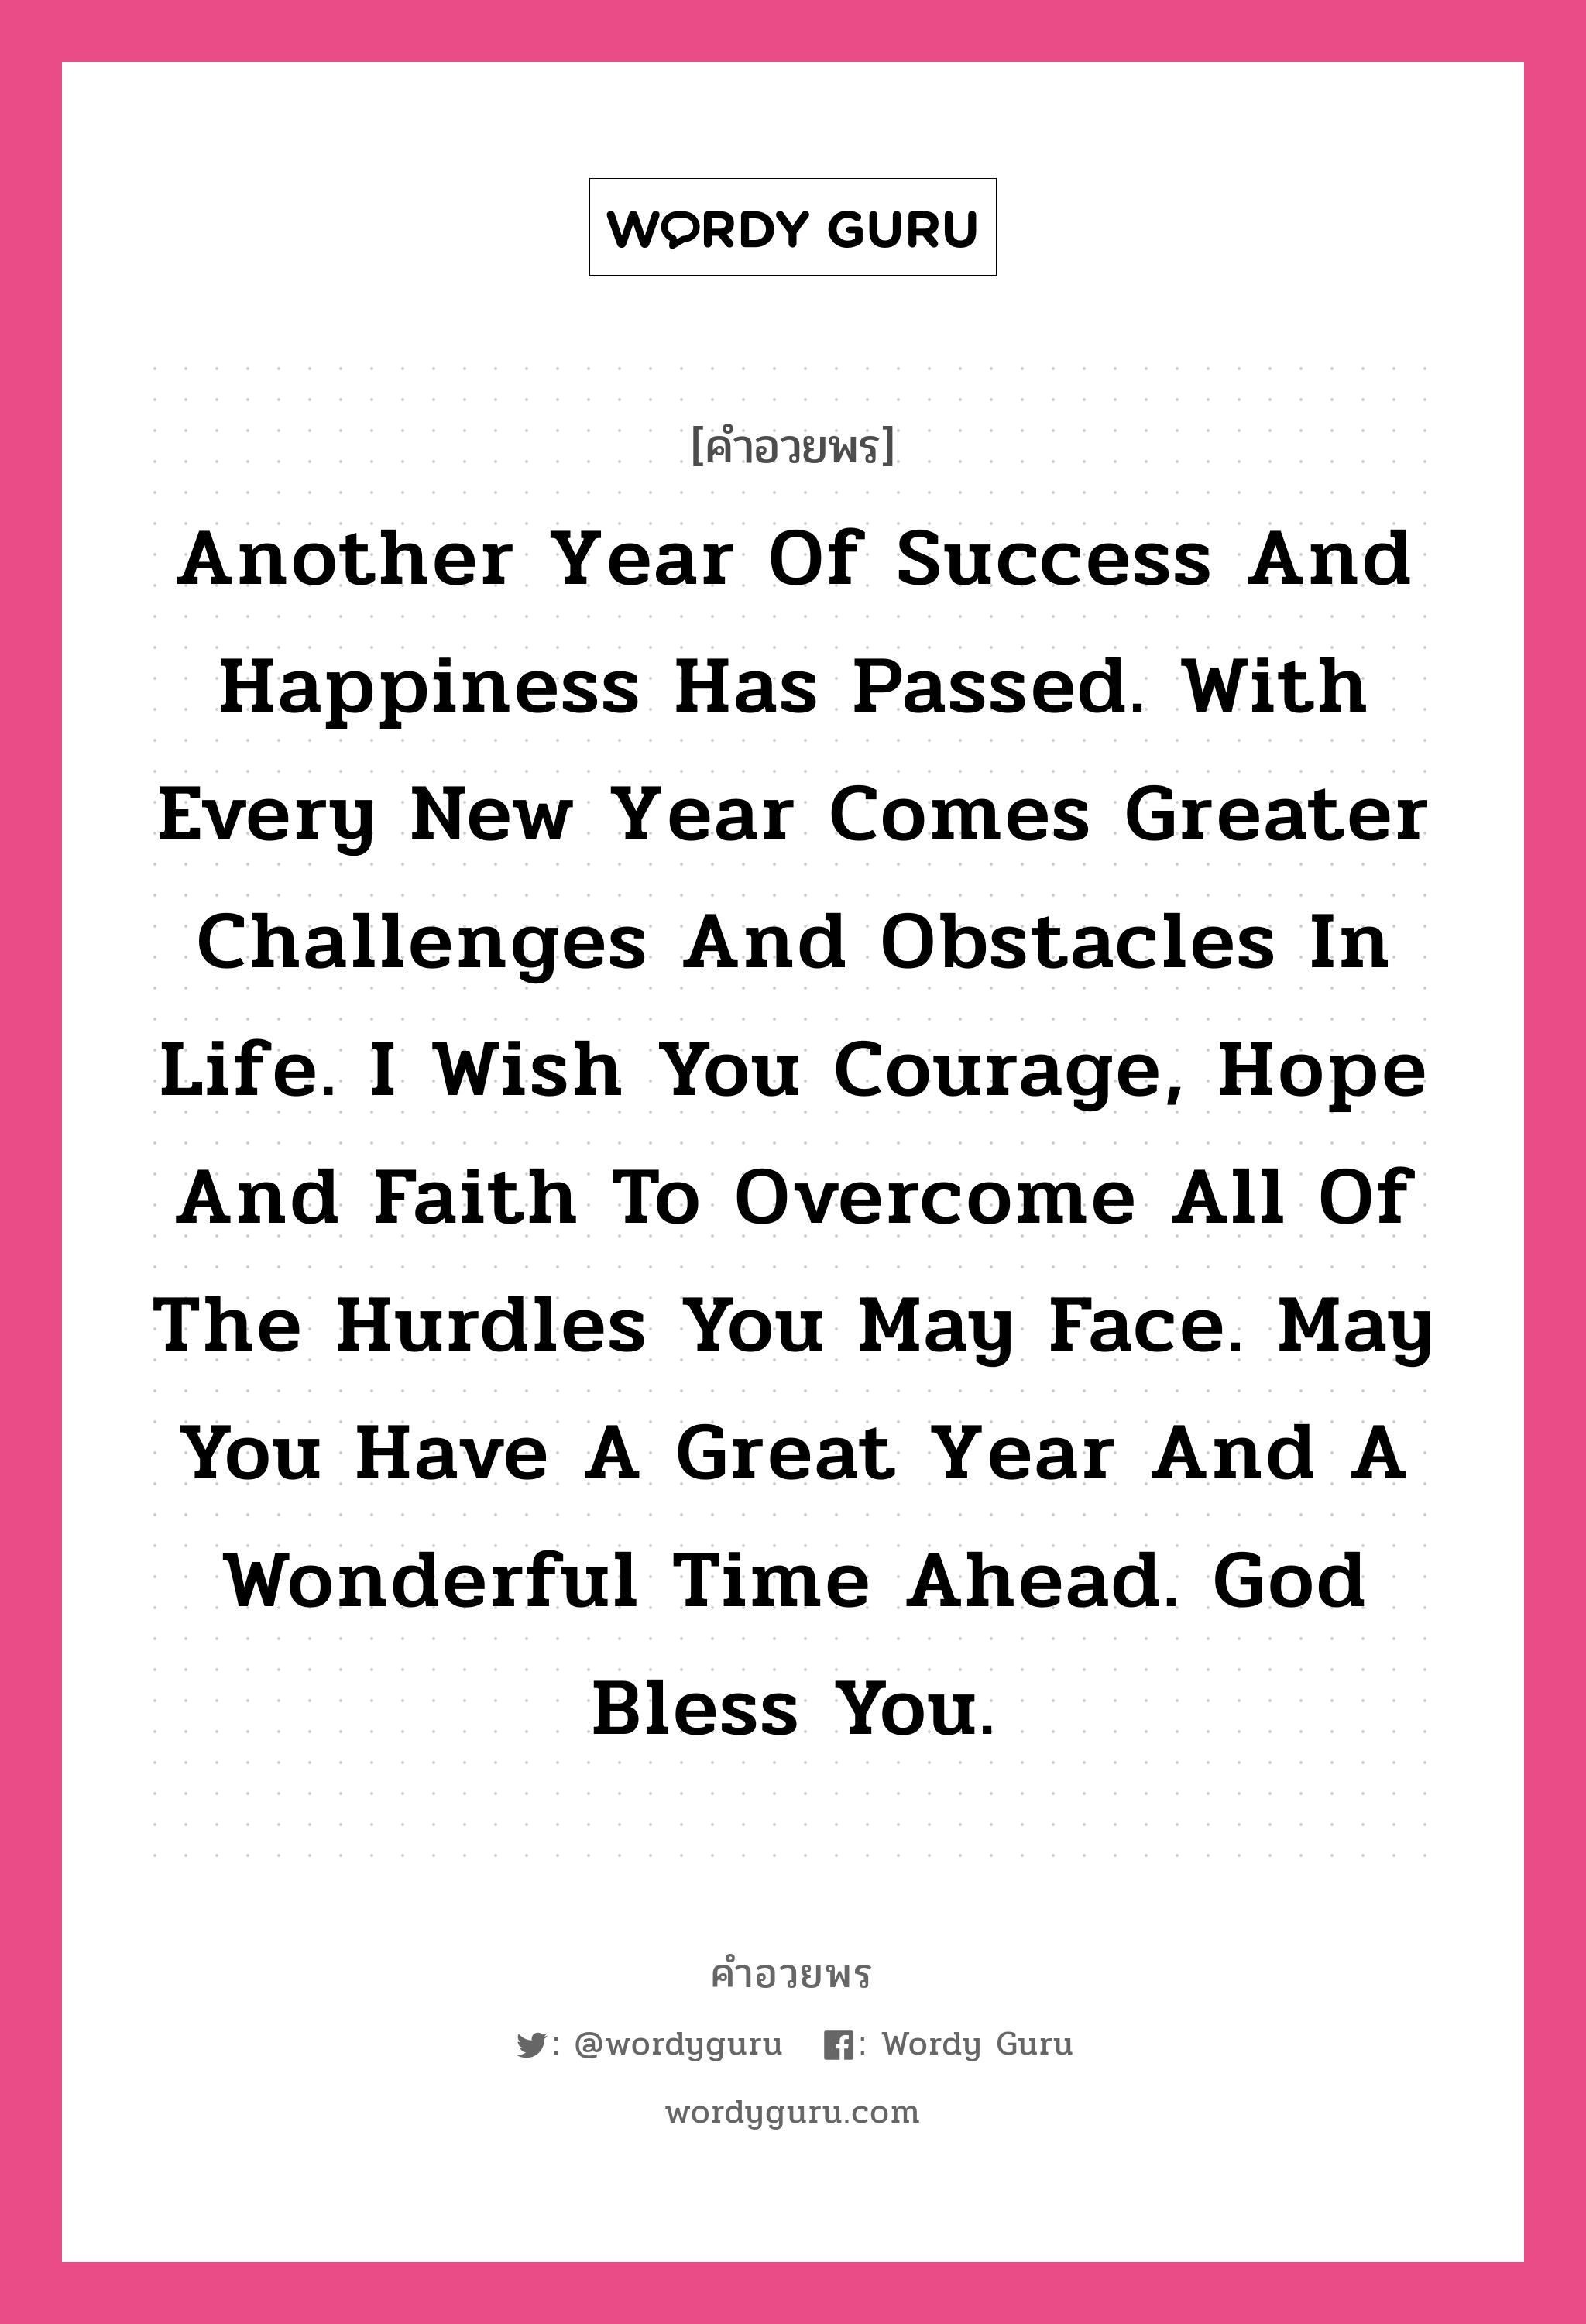 คำอวยพร Another year of success and happiness has passed. With every new year comes greater challenges and obstacles in life. I wish you courage, hope and faith to overcome all of the hurdles you may face. May you have a great year and a wonderful time ahead. God bless you. คืออะไร?, แปลว่า หนึ่งปีแห่งความสุขและความสำเร็จได้ล่วงผ่านไป พร้อมปีใหม่ที่ก้าวเข้ามากับอุปสรรคและความท้าทายใหม่ในชีวิต ขอให้คุณจงมีความกล้า ความหวัง และศรัทธา เอาได้ชนะทุกปัญหาที่ต้องเผชิญ ขอให้ปีใหม่นี้เป็นปีพิเศษและมีช่วงเวลาแสนอัศจรรย์ ขอพระเจ้าอวยพรแด่คุณนะ หมวด คำอวยพรวันคริสต์มาส หมวด คำอวยพรวันคริสต์มาส